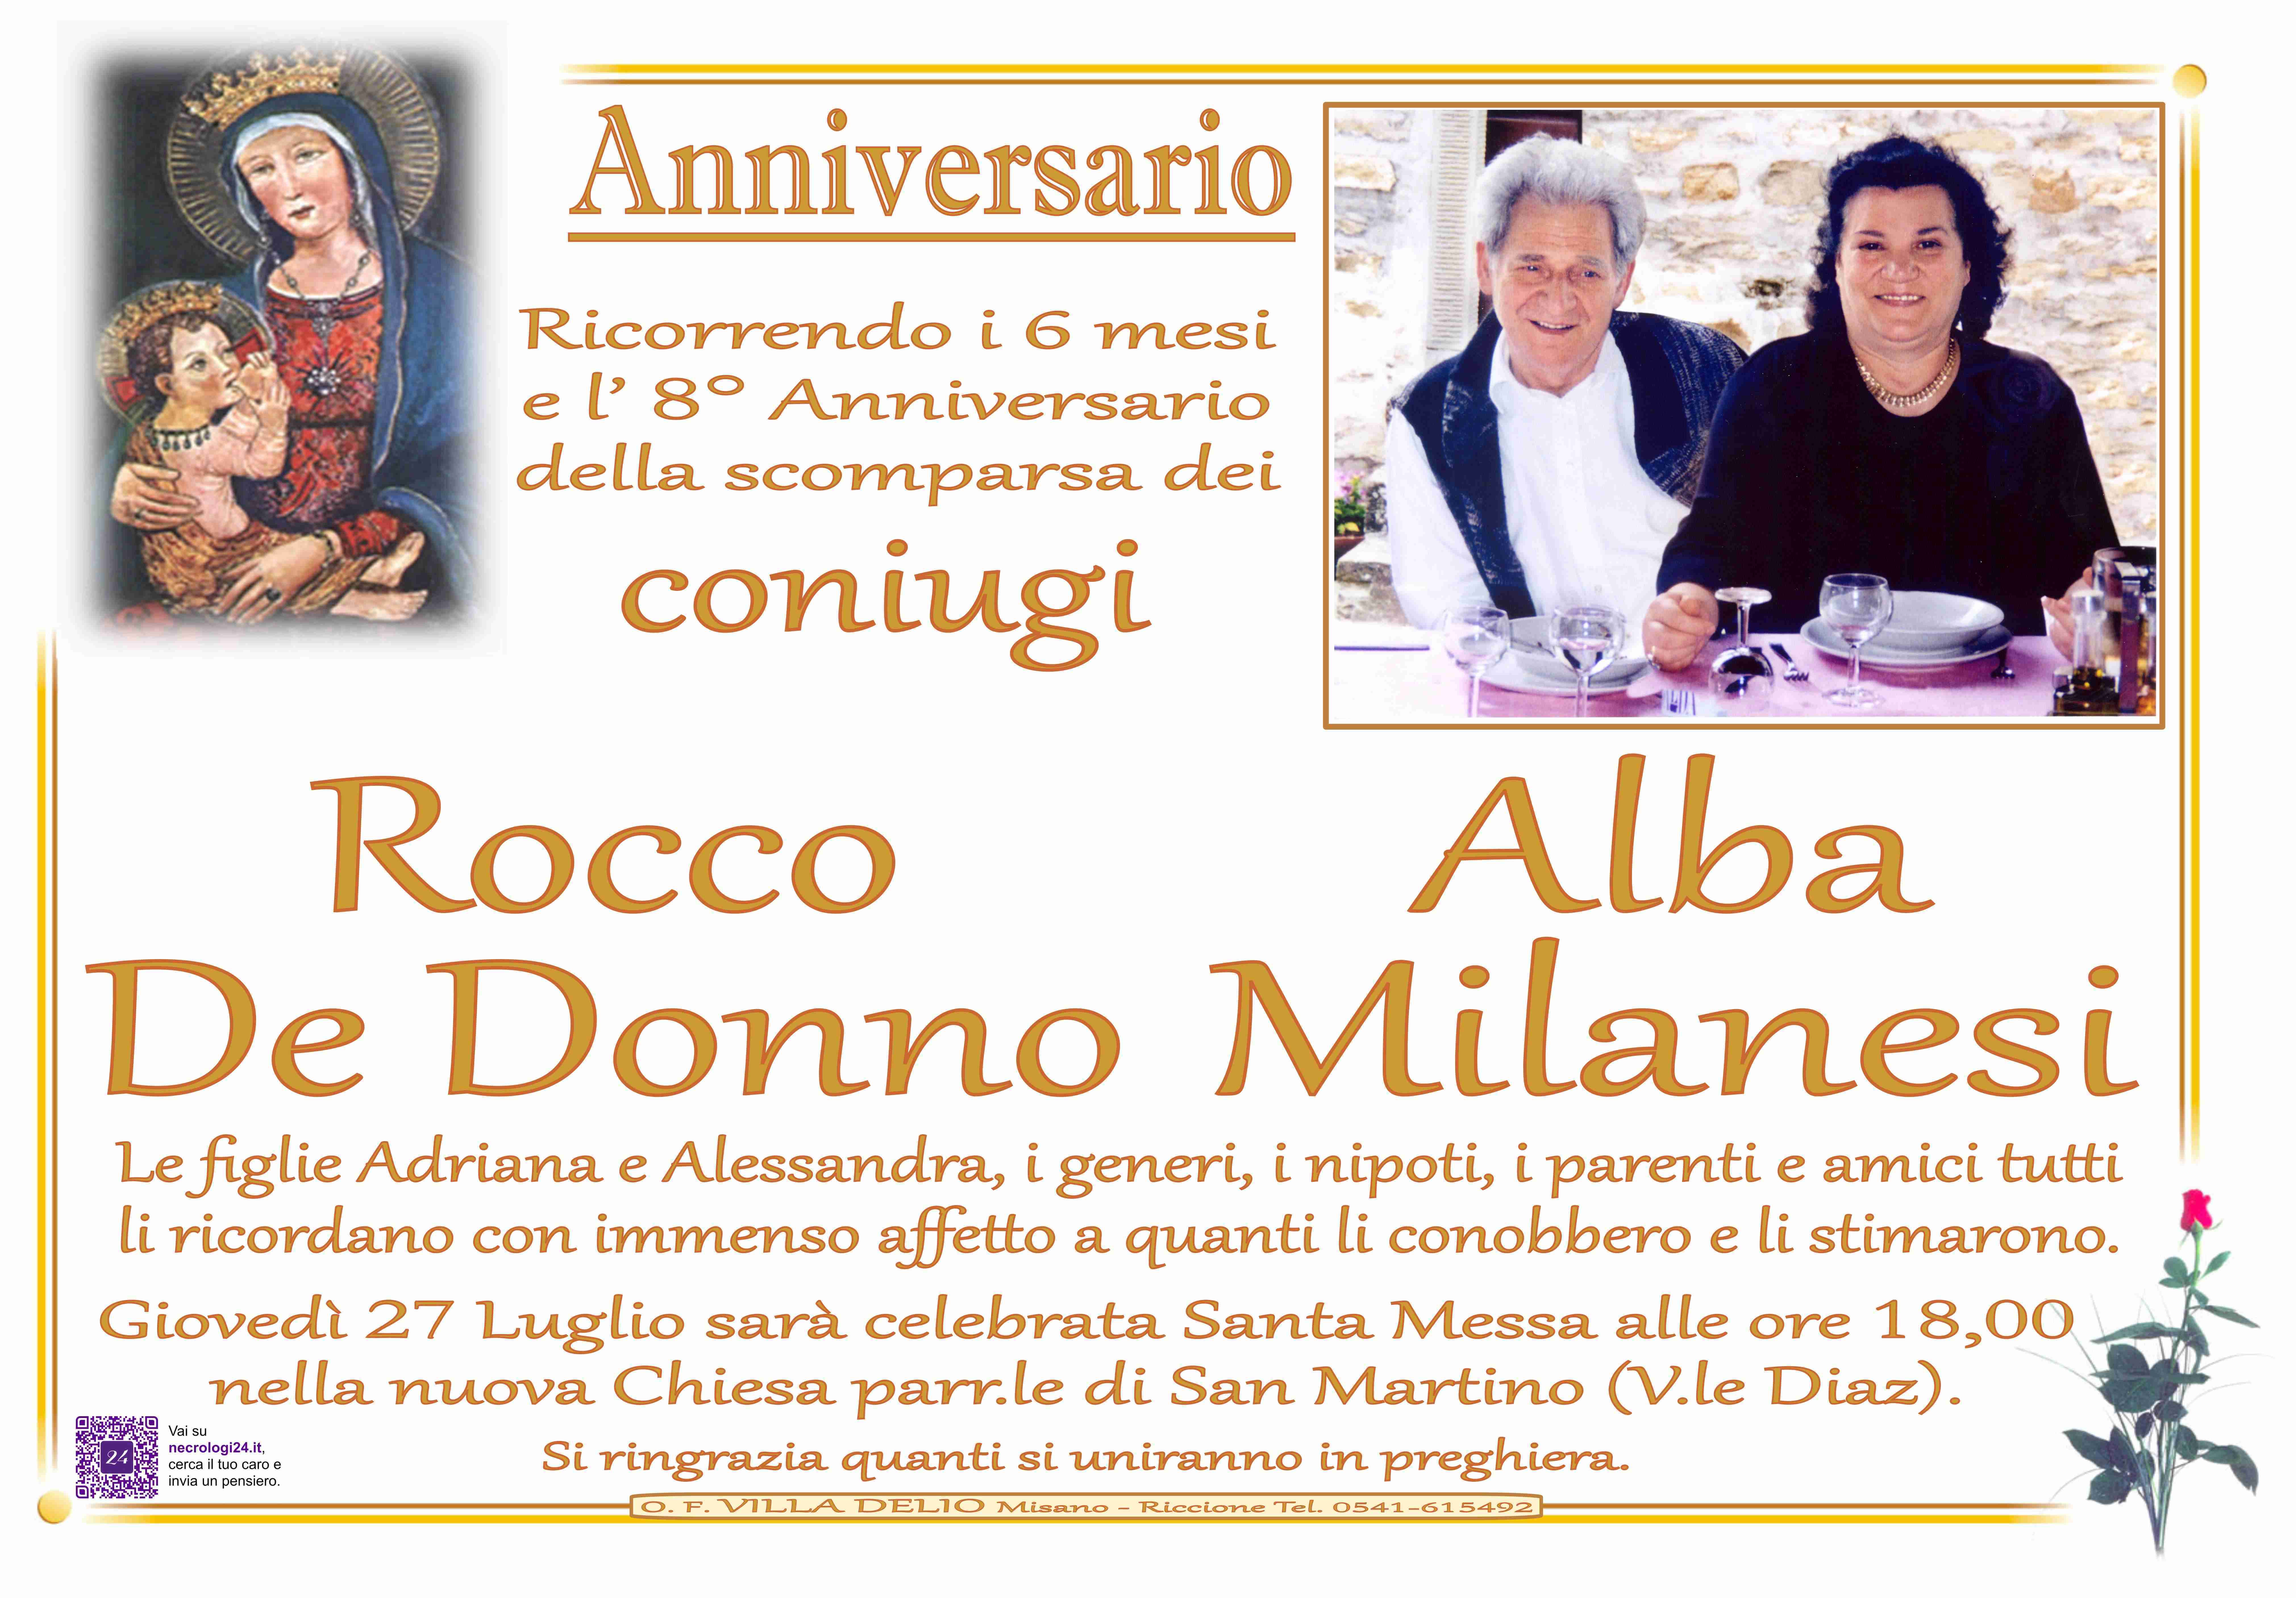 Rocco De Donno e Alba Milanesi